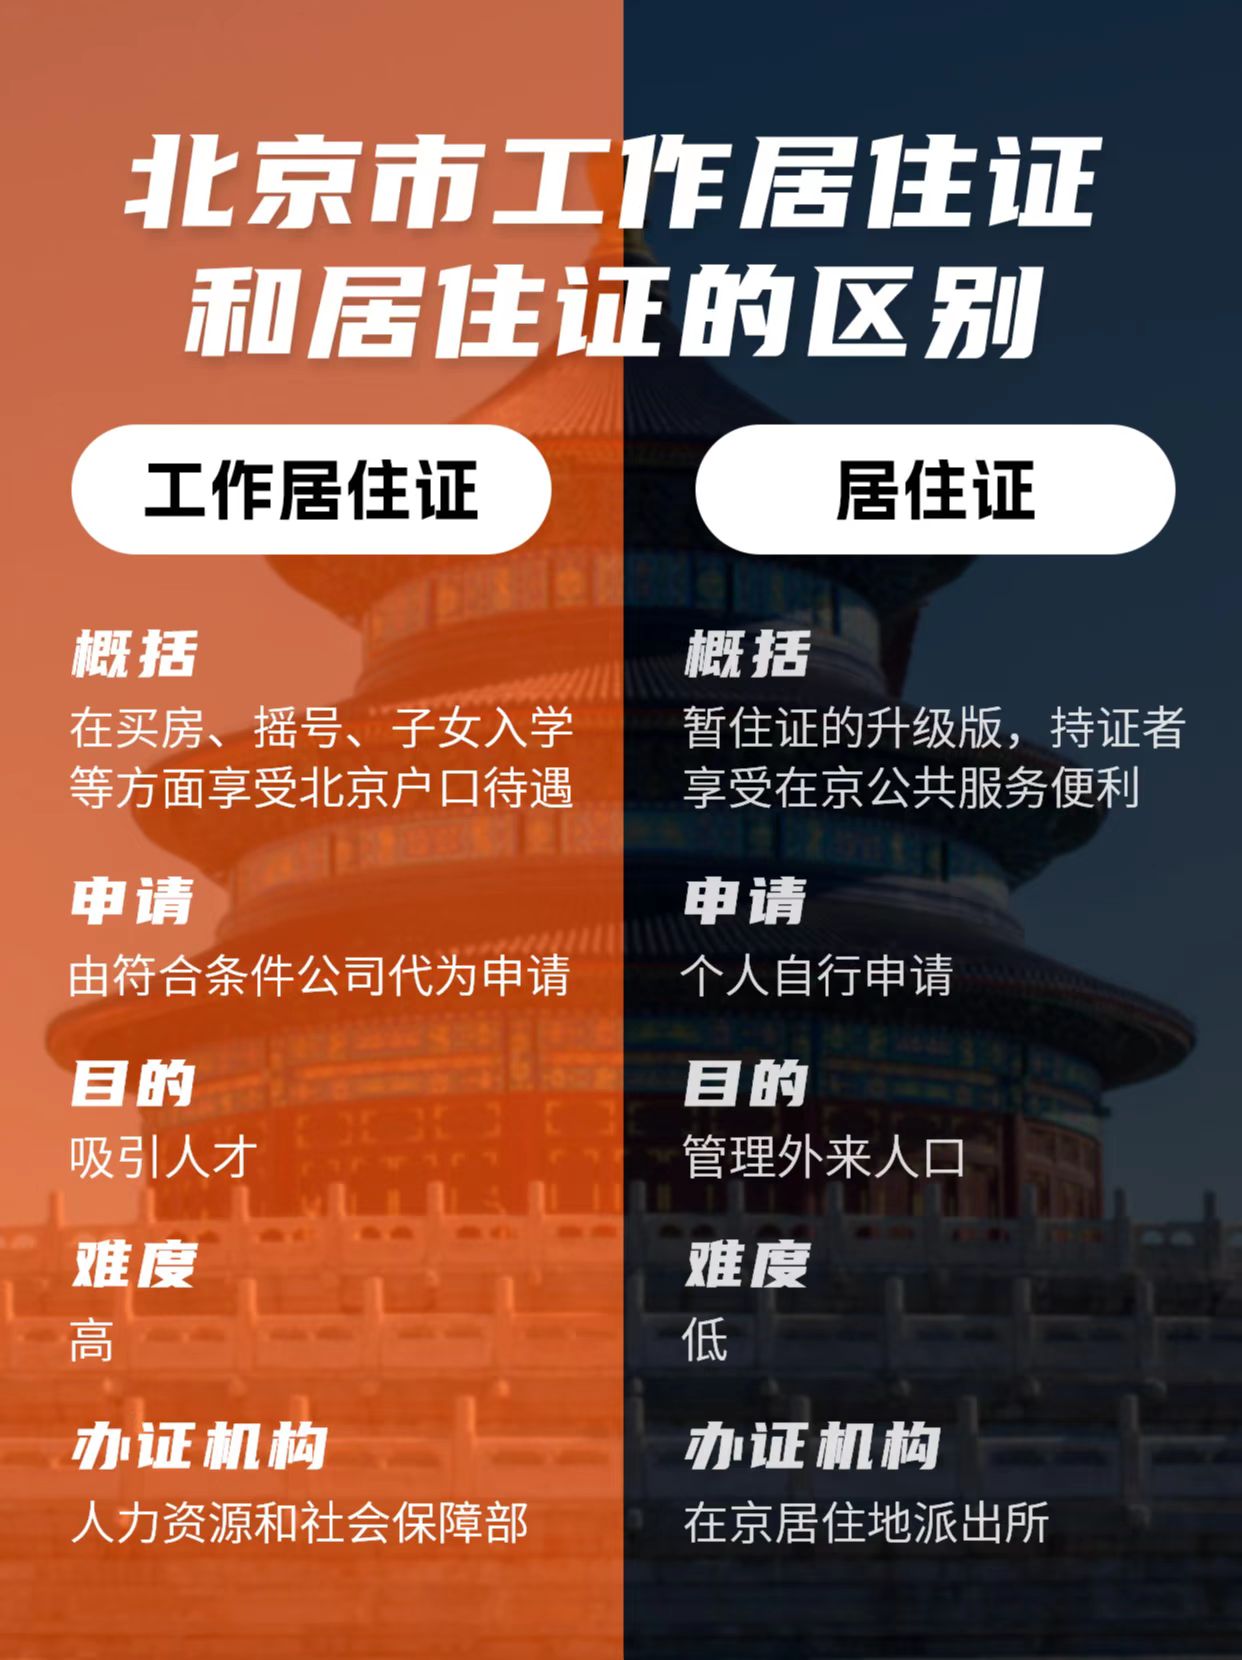 工作居住证vs北京居住证有什么区别?